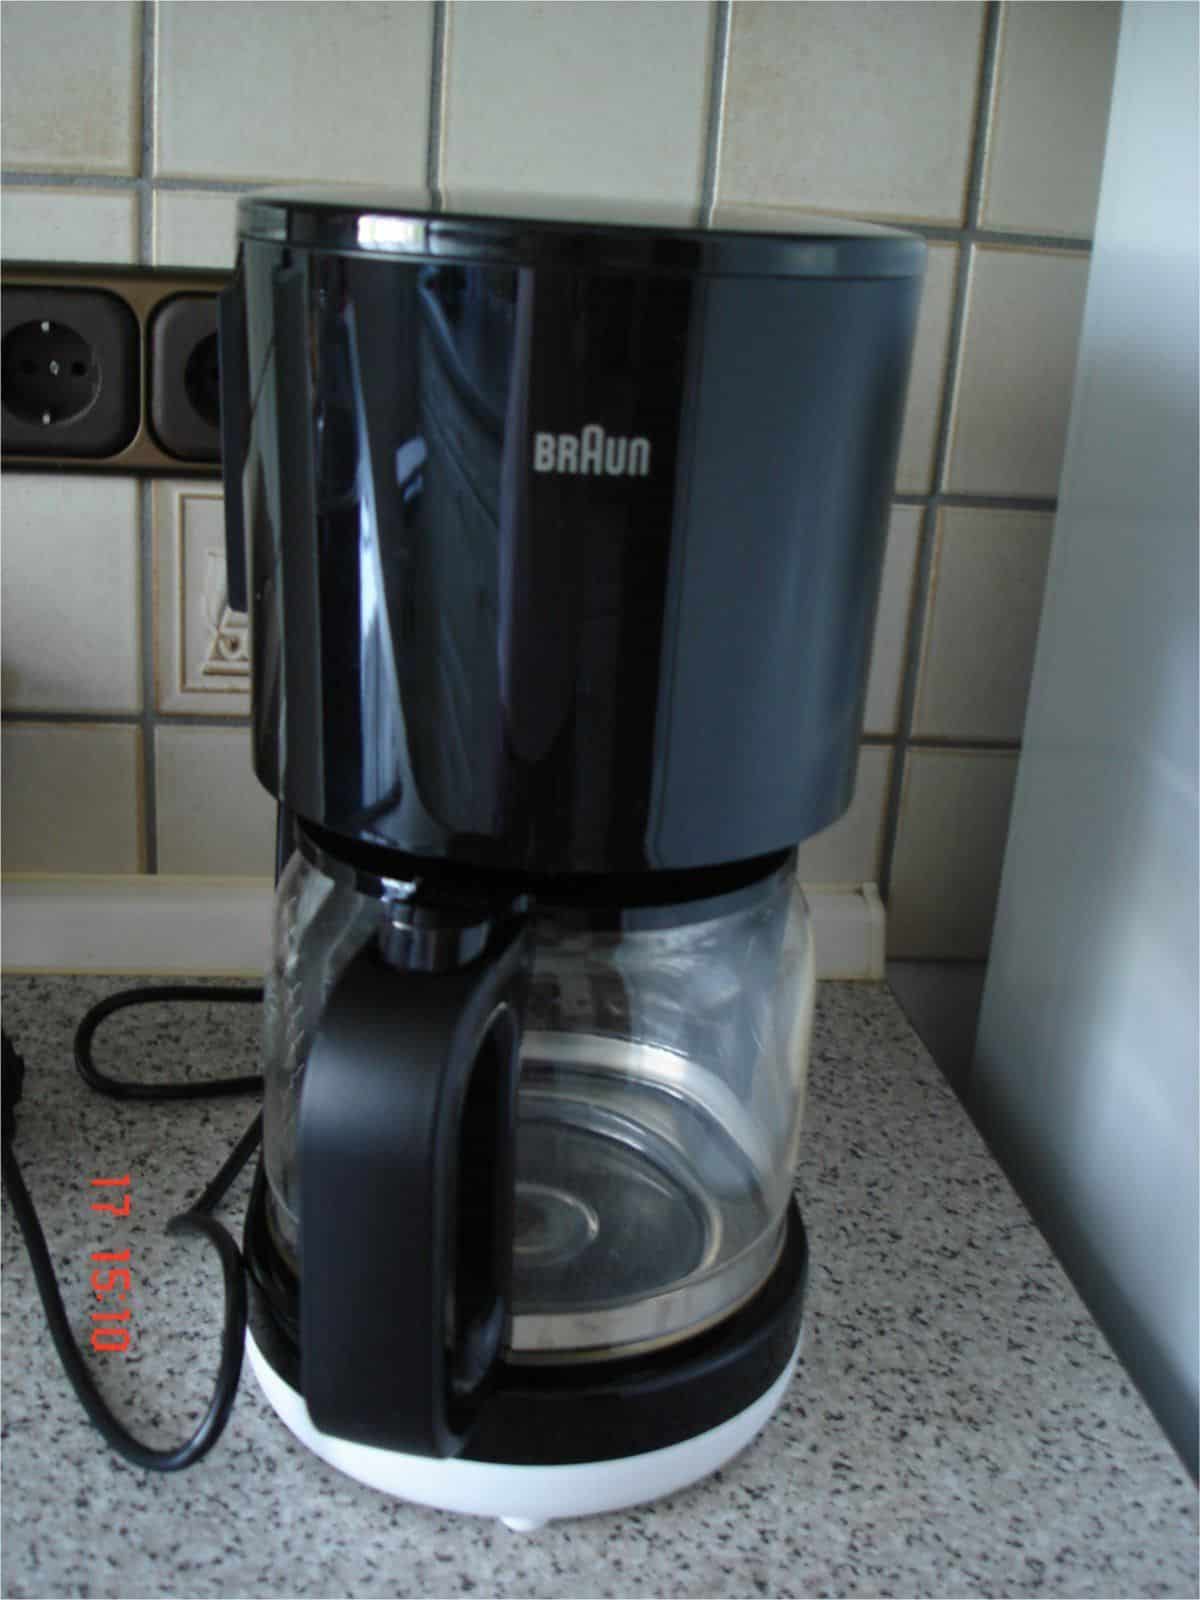 BRAUN Kaffeemaschine KF 1100.BK/KF 1100.WH Test und Bewertung - Erfahrungen